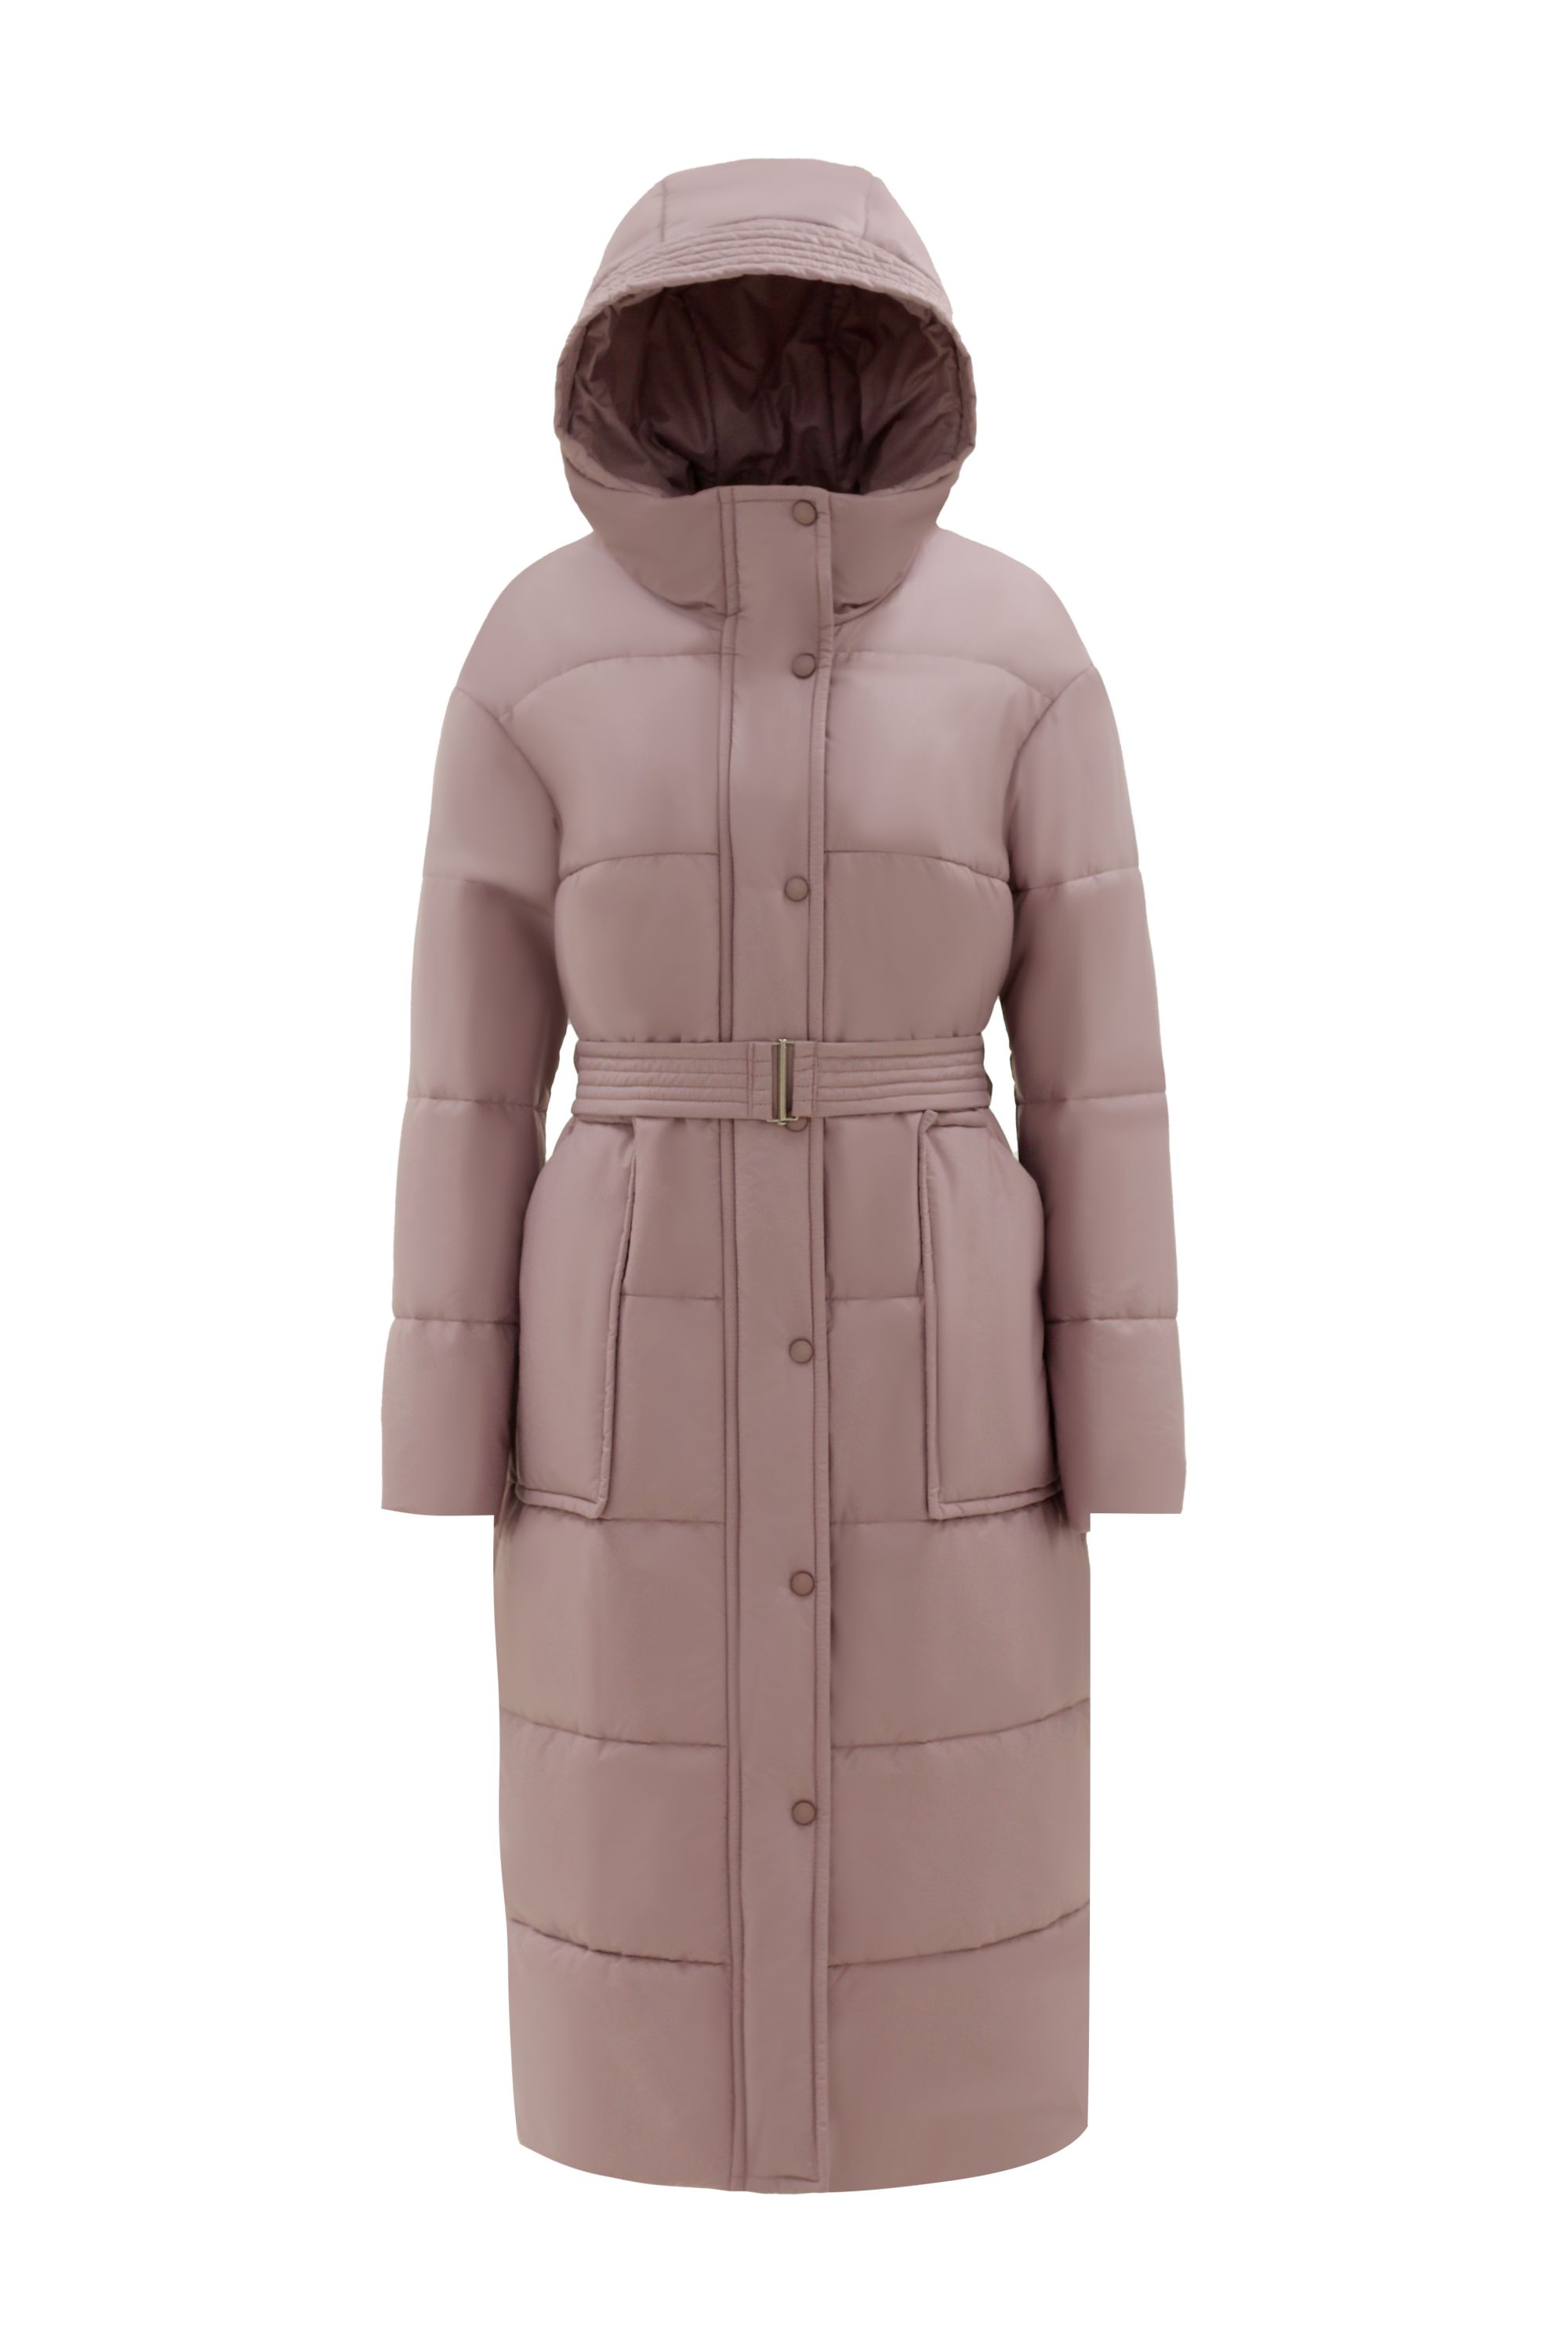 Пальто женское плащевое утепленное 5-12173-1. Фото 5.